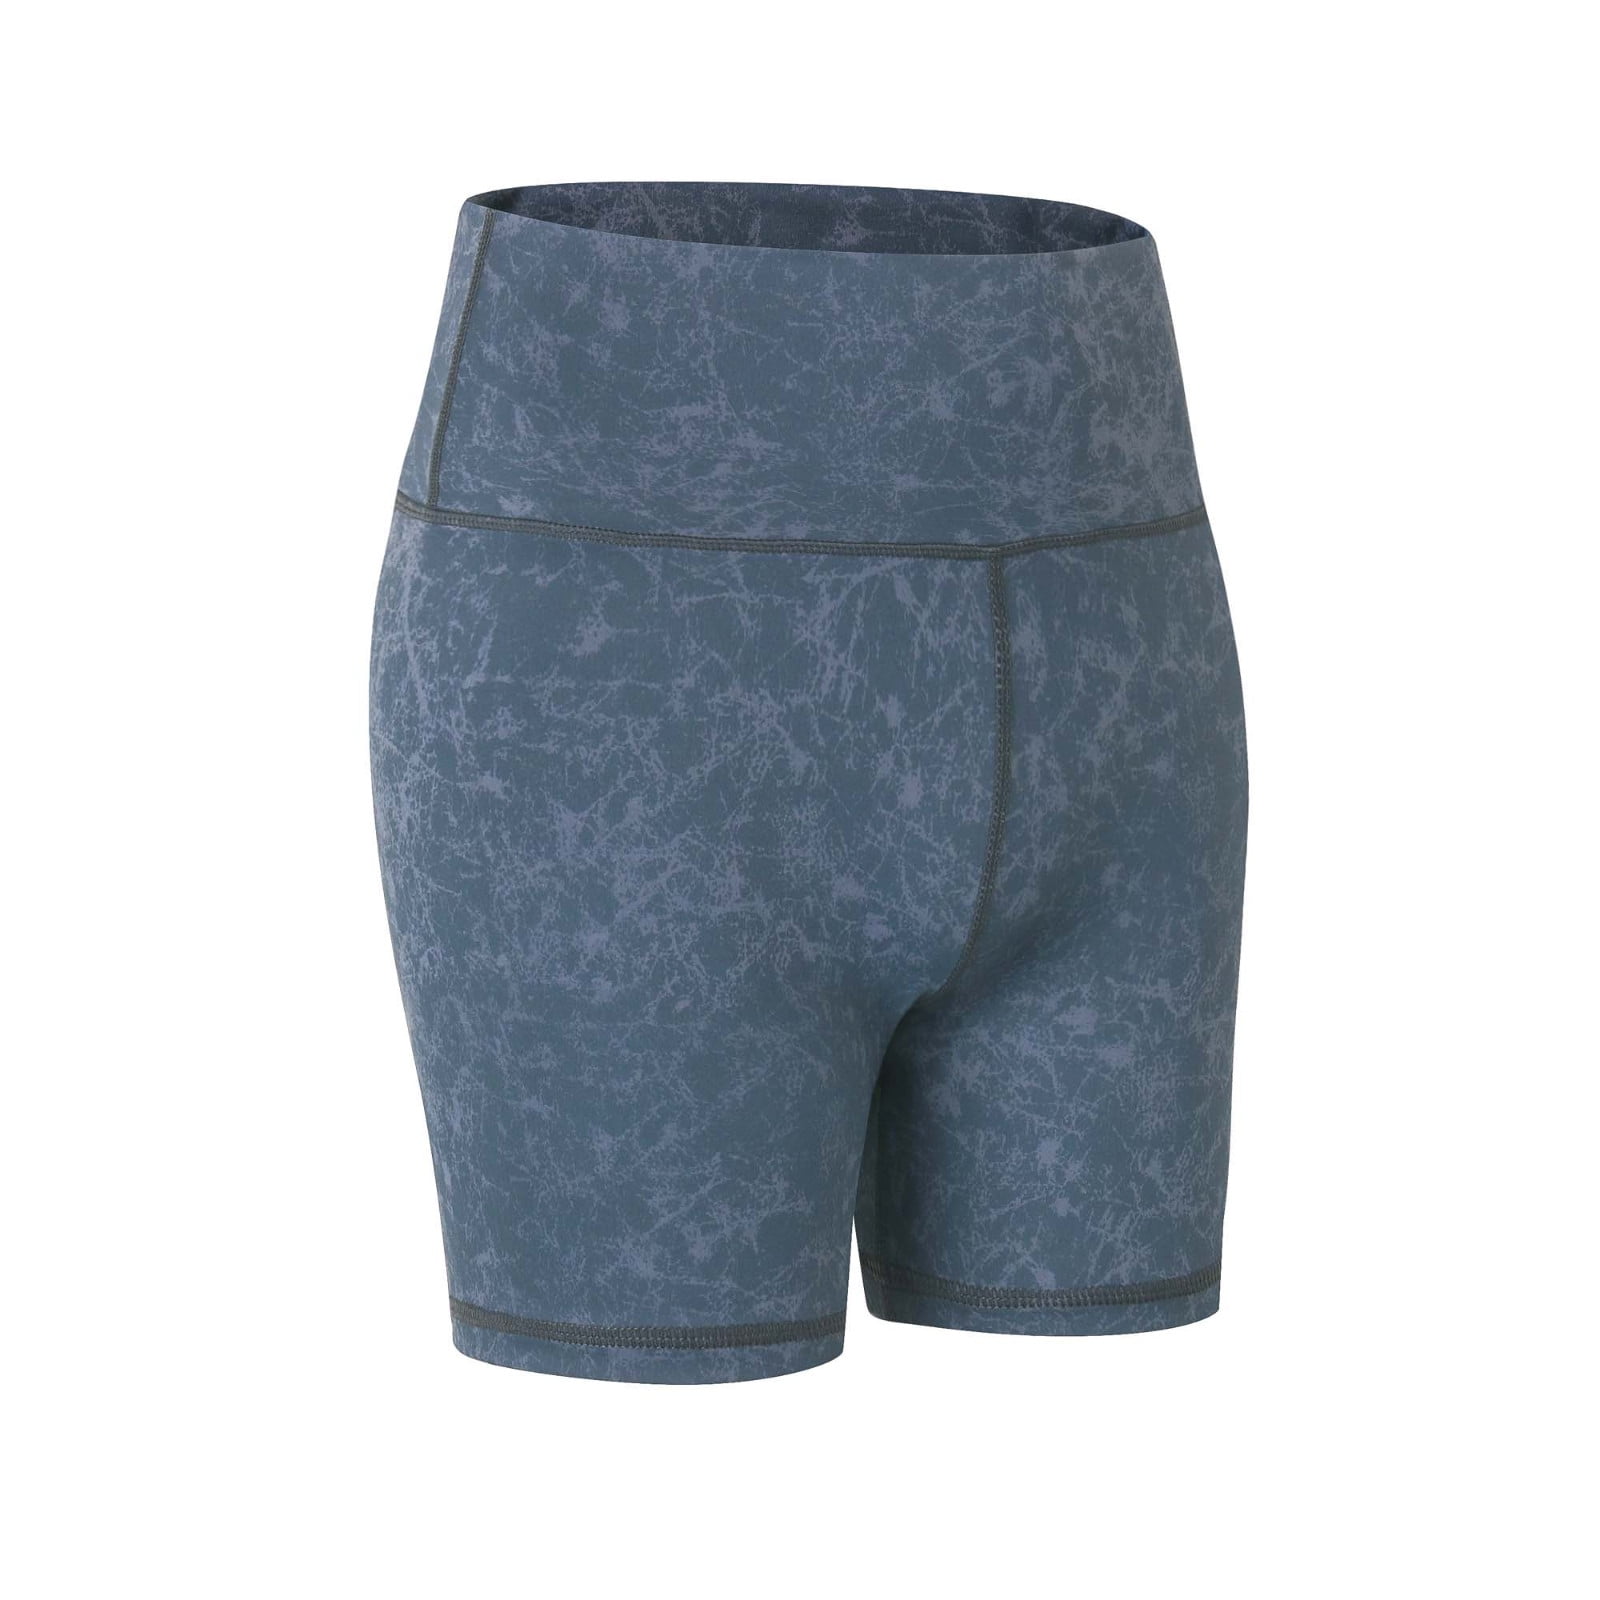 Yunoga Athletic Shorts for Women - Poshmark